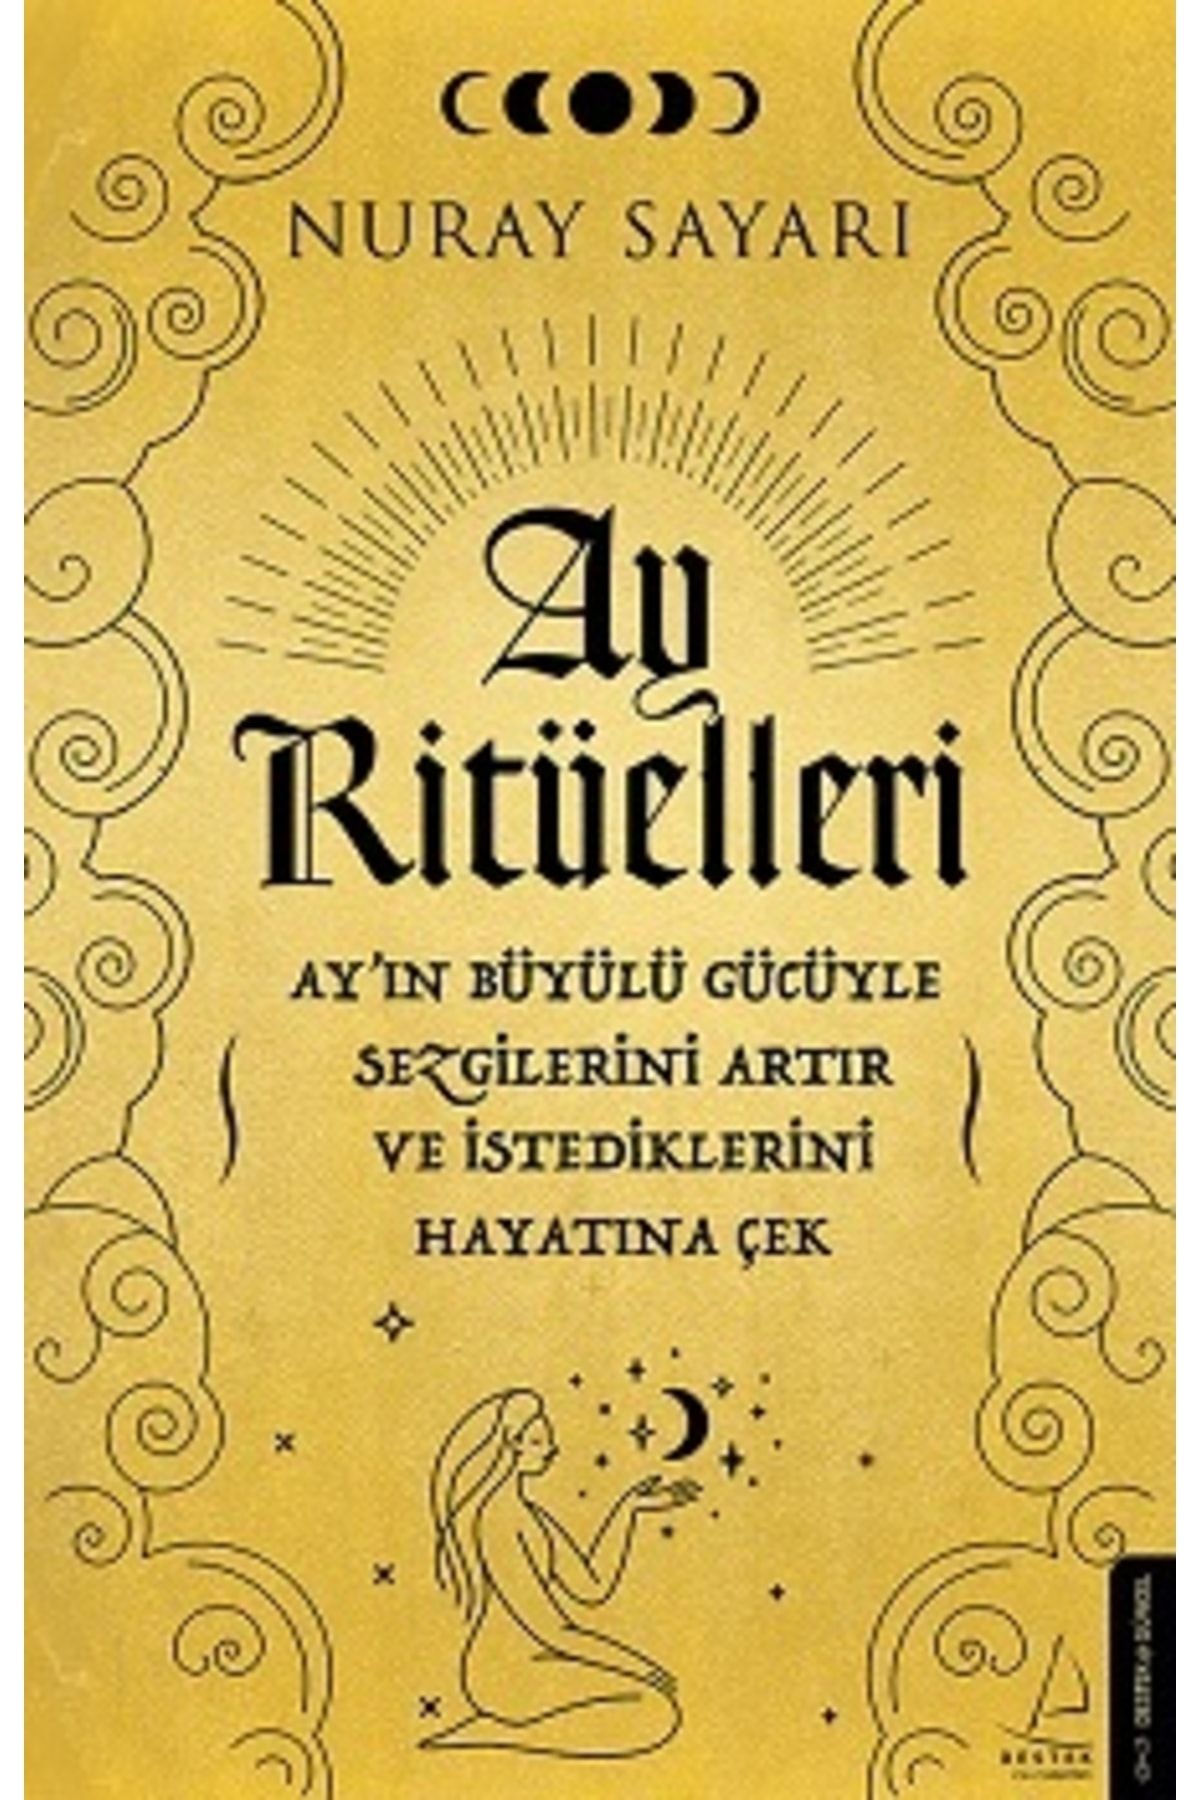 Destek Yayınları Ay Ritüelleri kitabı - Nuray Sayarı - Destek Yayınları